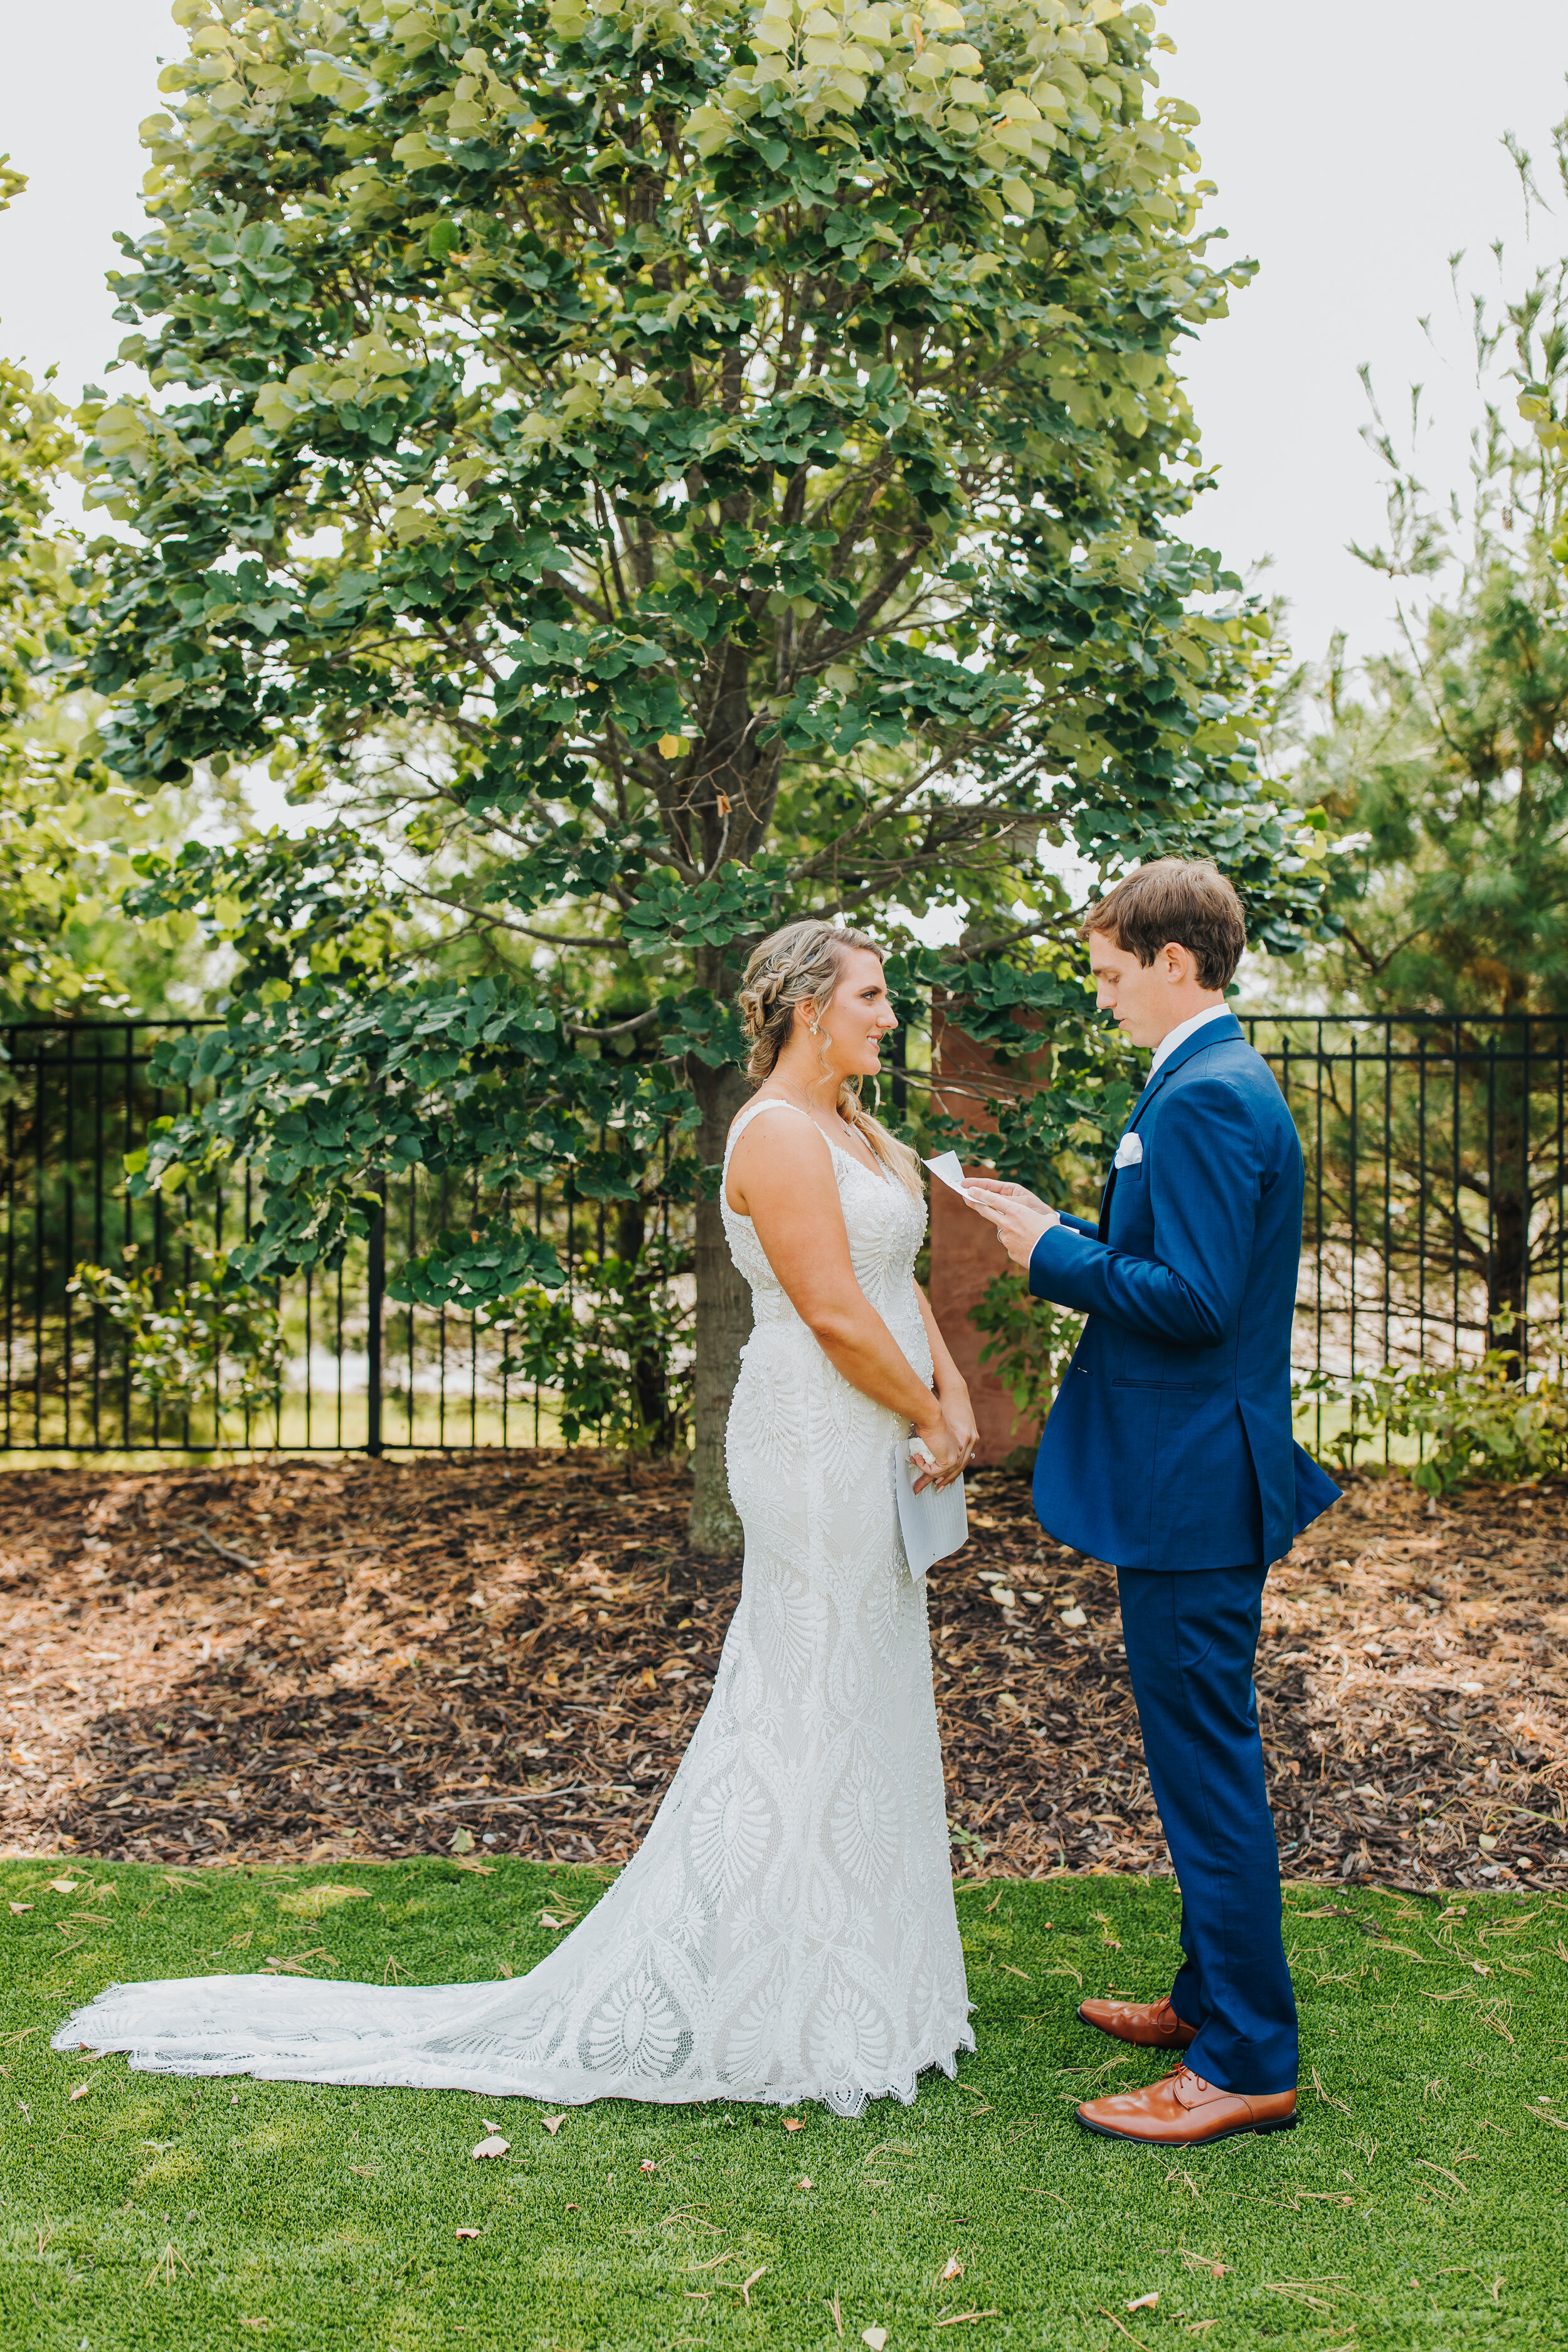 Ashton & Dan - Married - Nathaniel Jensen Photography - Omaha Nebraska Wedding Photographer-115.jpg